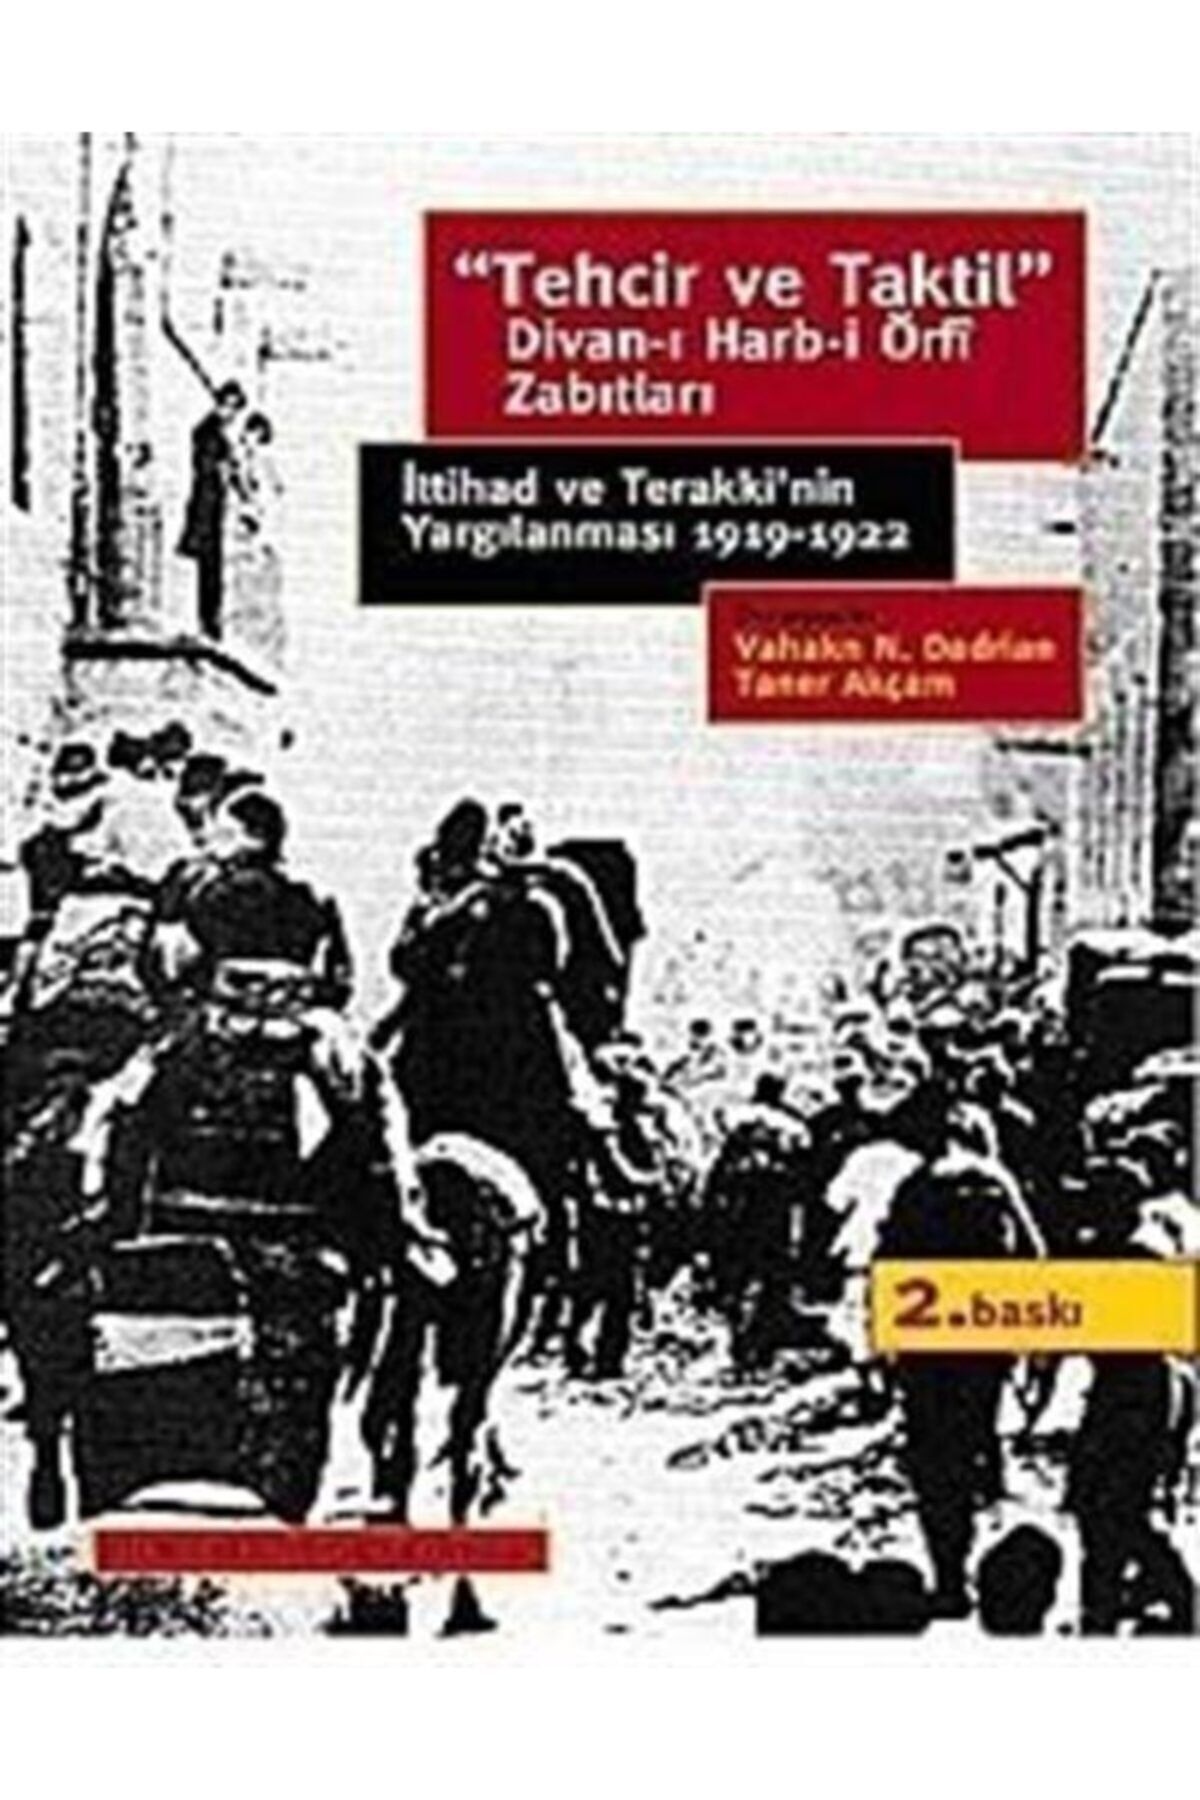 İstanbul Bilgi Üniversitesi Yayınları Tehcir Ve Taktil Divan-ı Harb-i Örfi Zabıtları & Ittihad Ve Terakki'nin Yargılanması 1919-1922